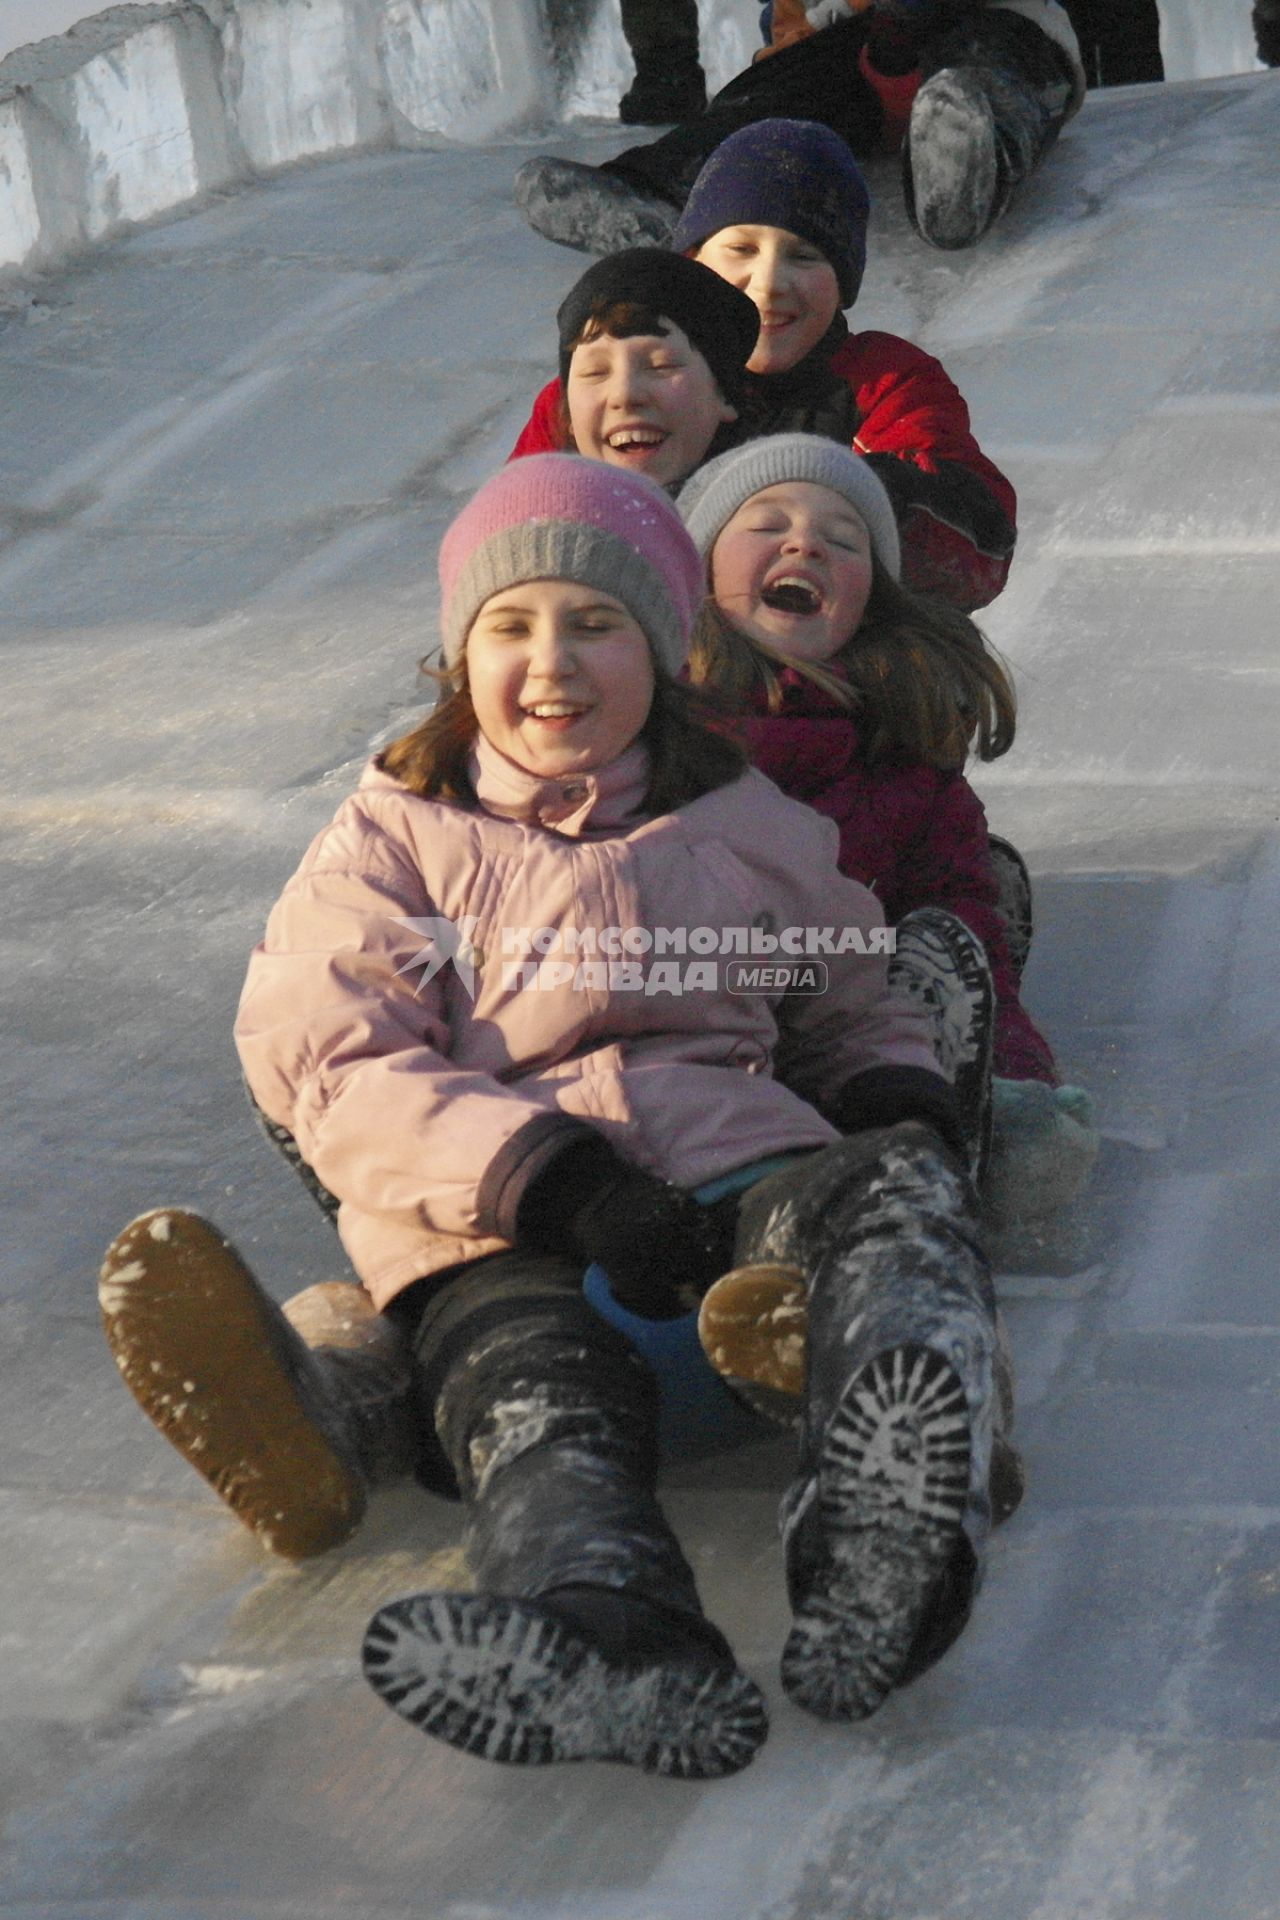 Дети катаются на ледяной горке.